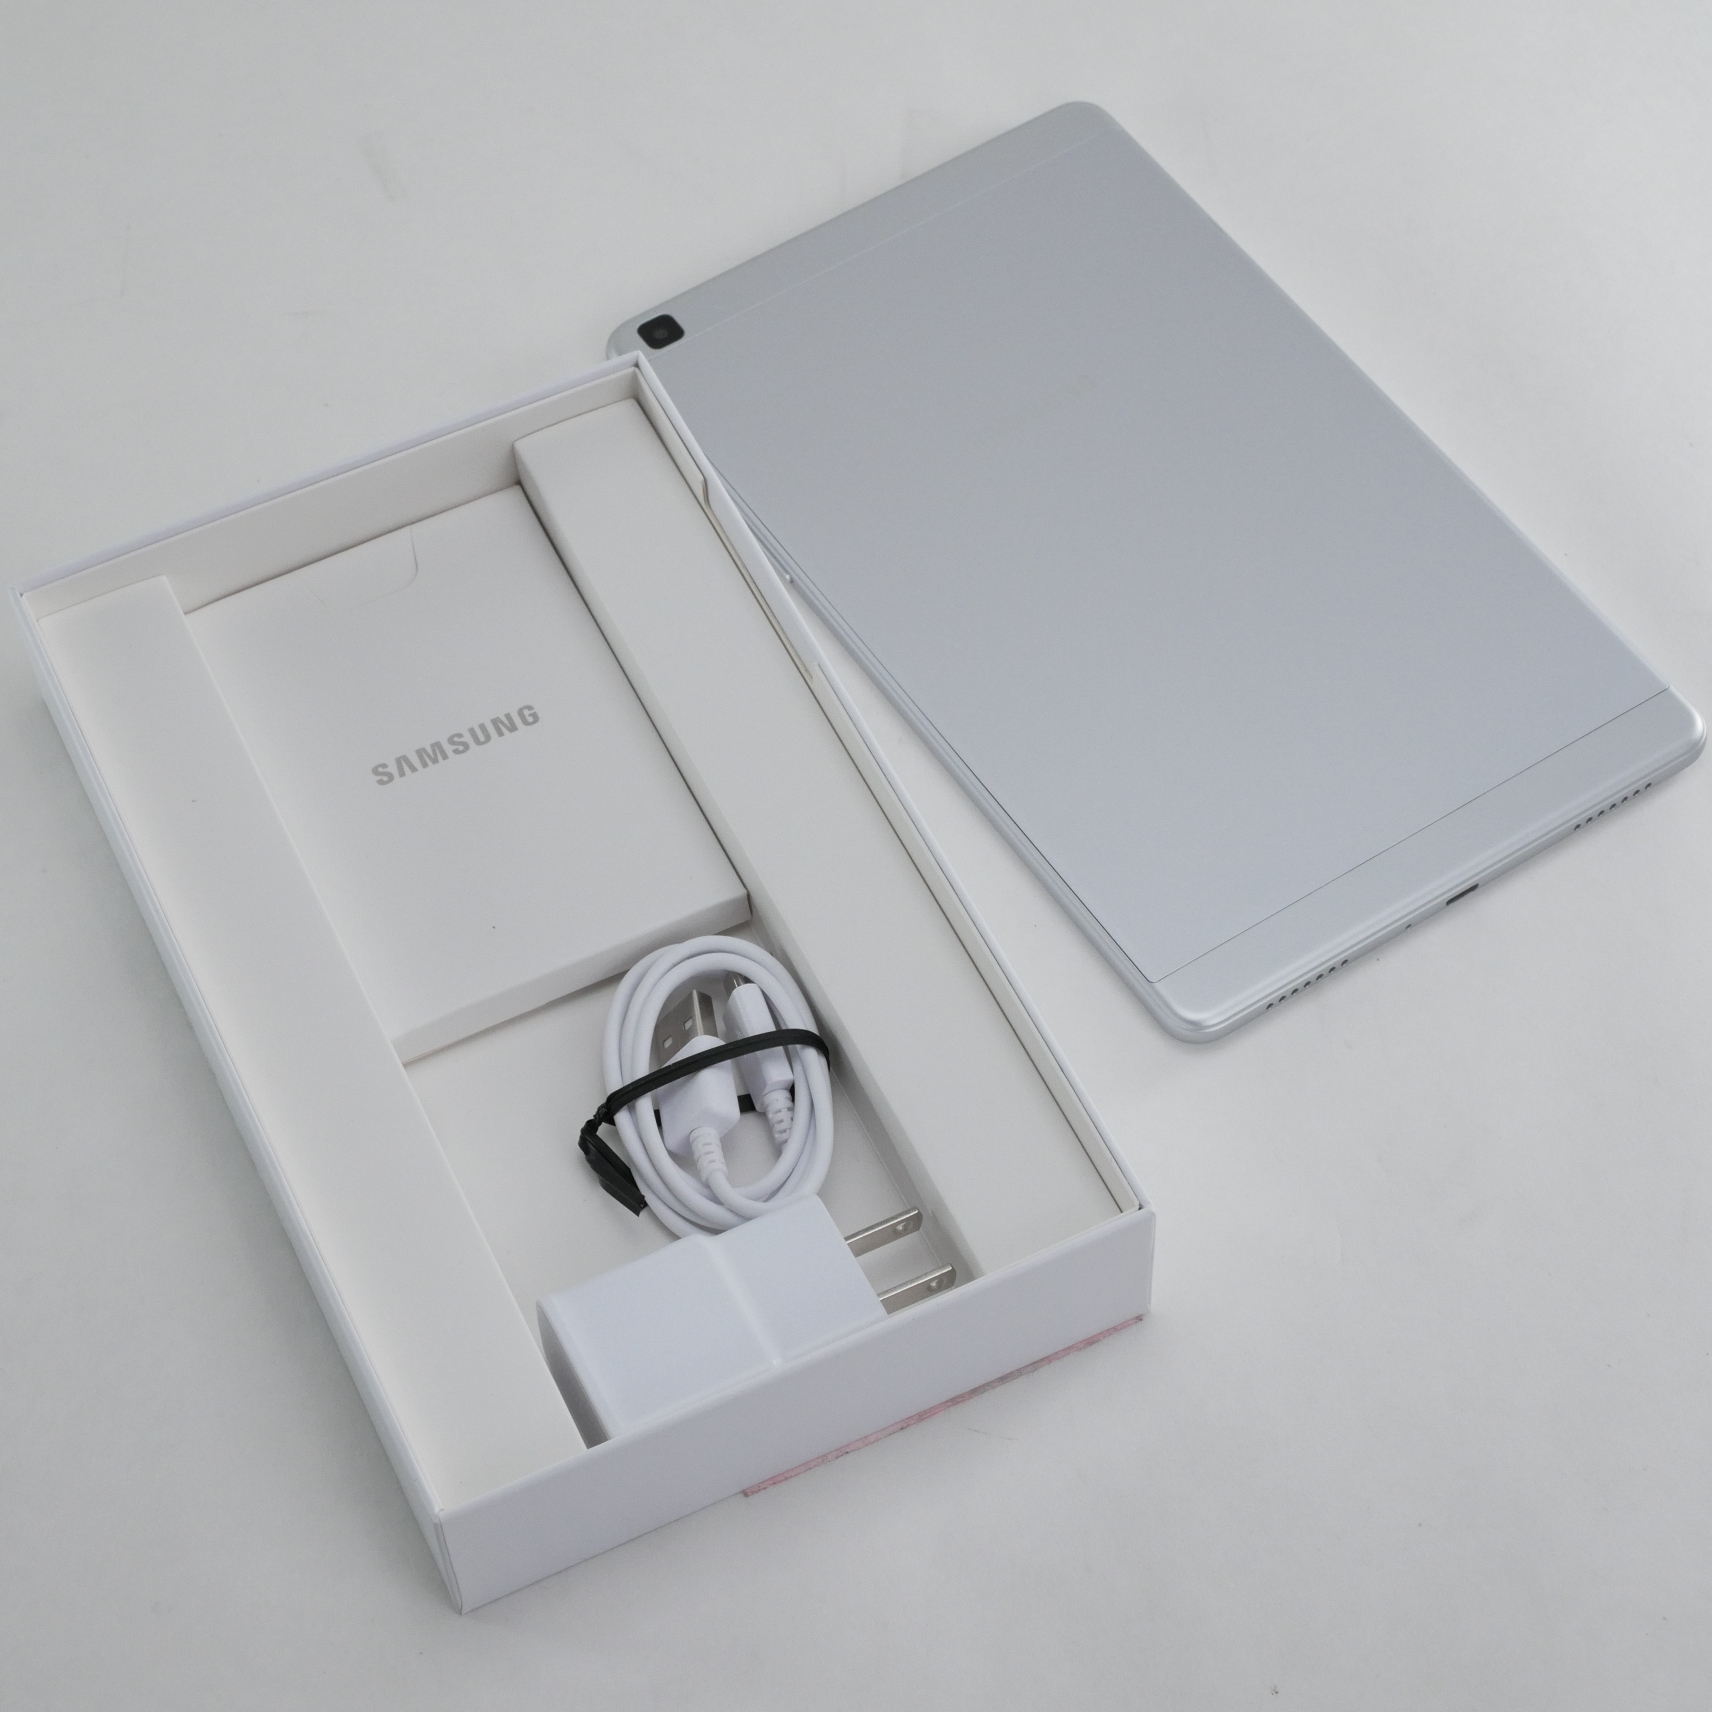 Samsung Galaxy Tab A (2019) 8" TFT memory 32Gb Exynos 7904 Quad-Core 2GHz Silver SM-T290NZSAXAR